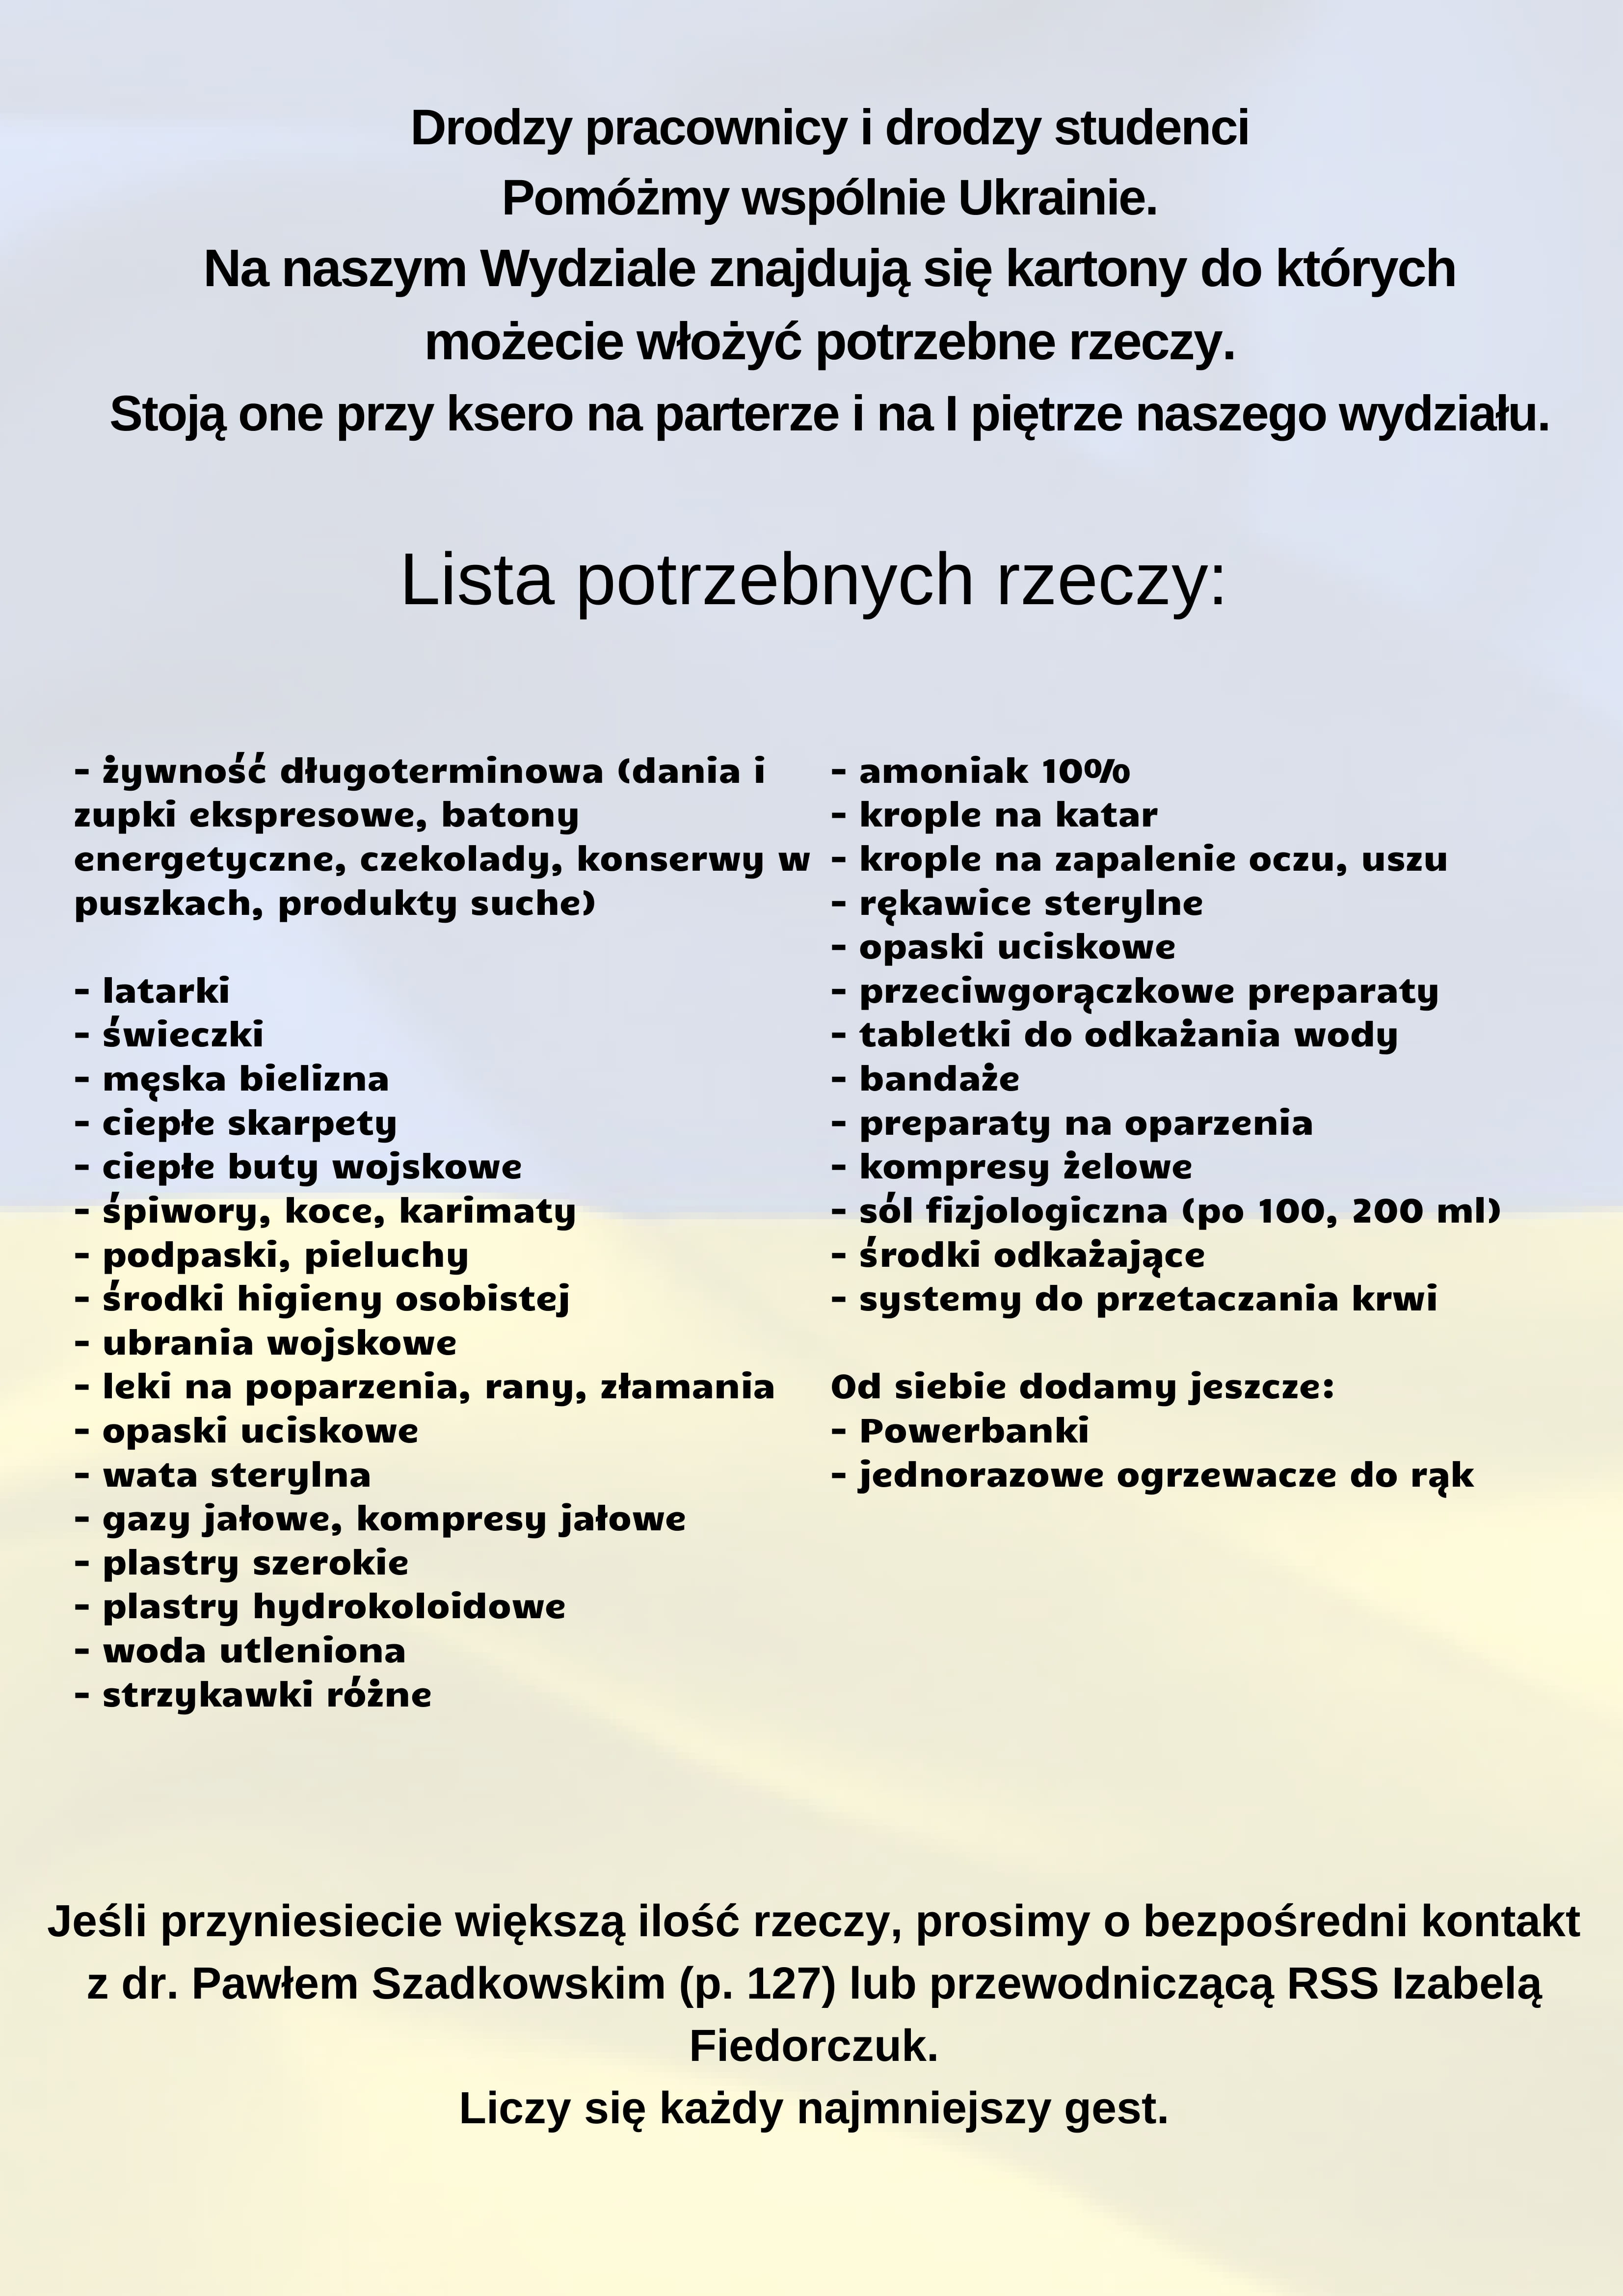 WHiSM plakat pomoc Ukrainie 1